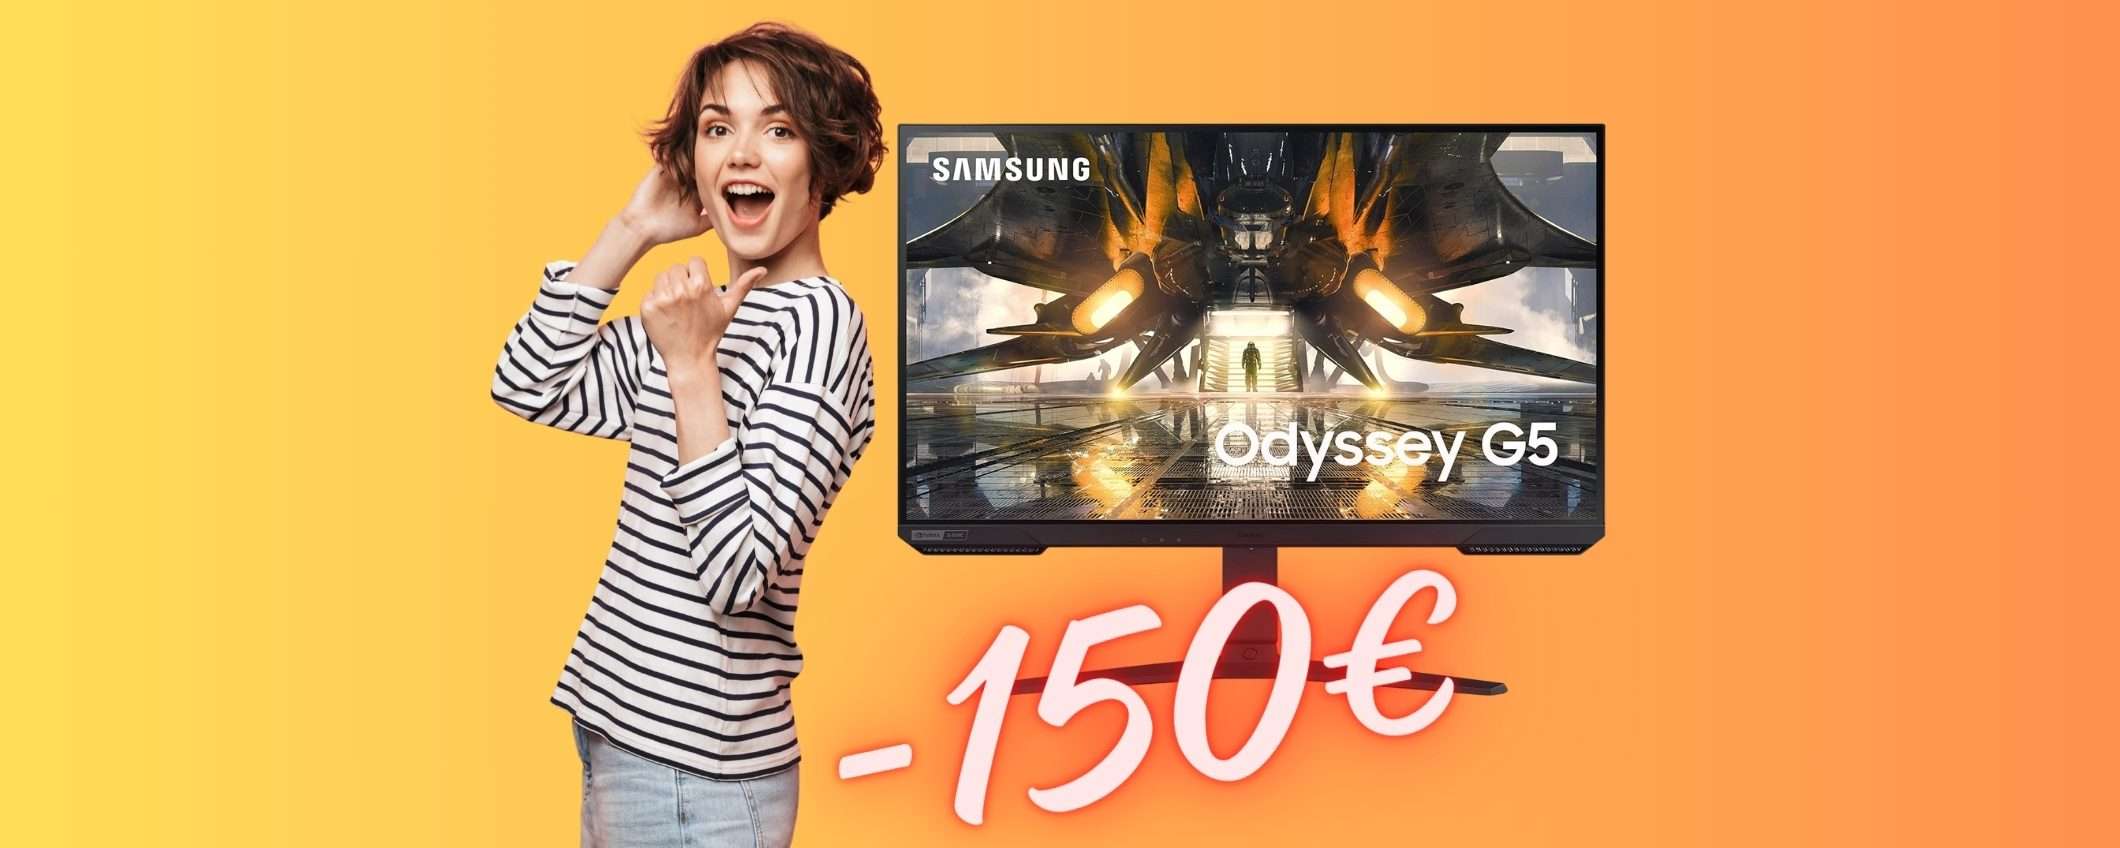 Samsung Odyssey G5: monitor da gaming in SCONTO di 150€ su Amazon